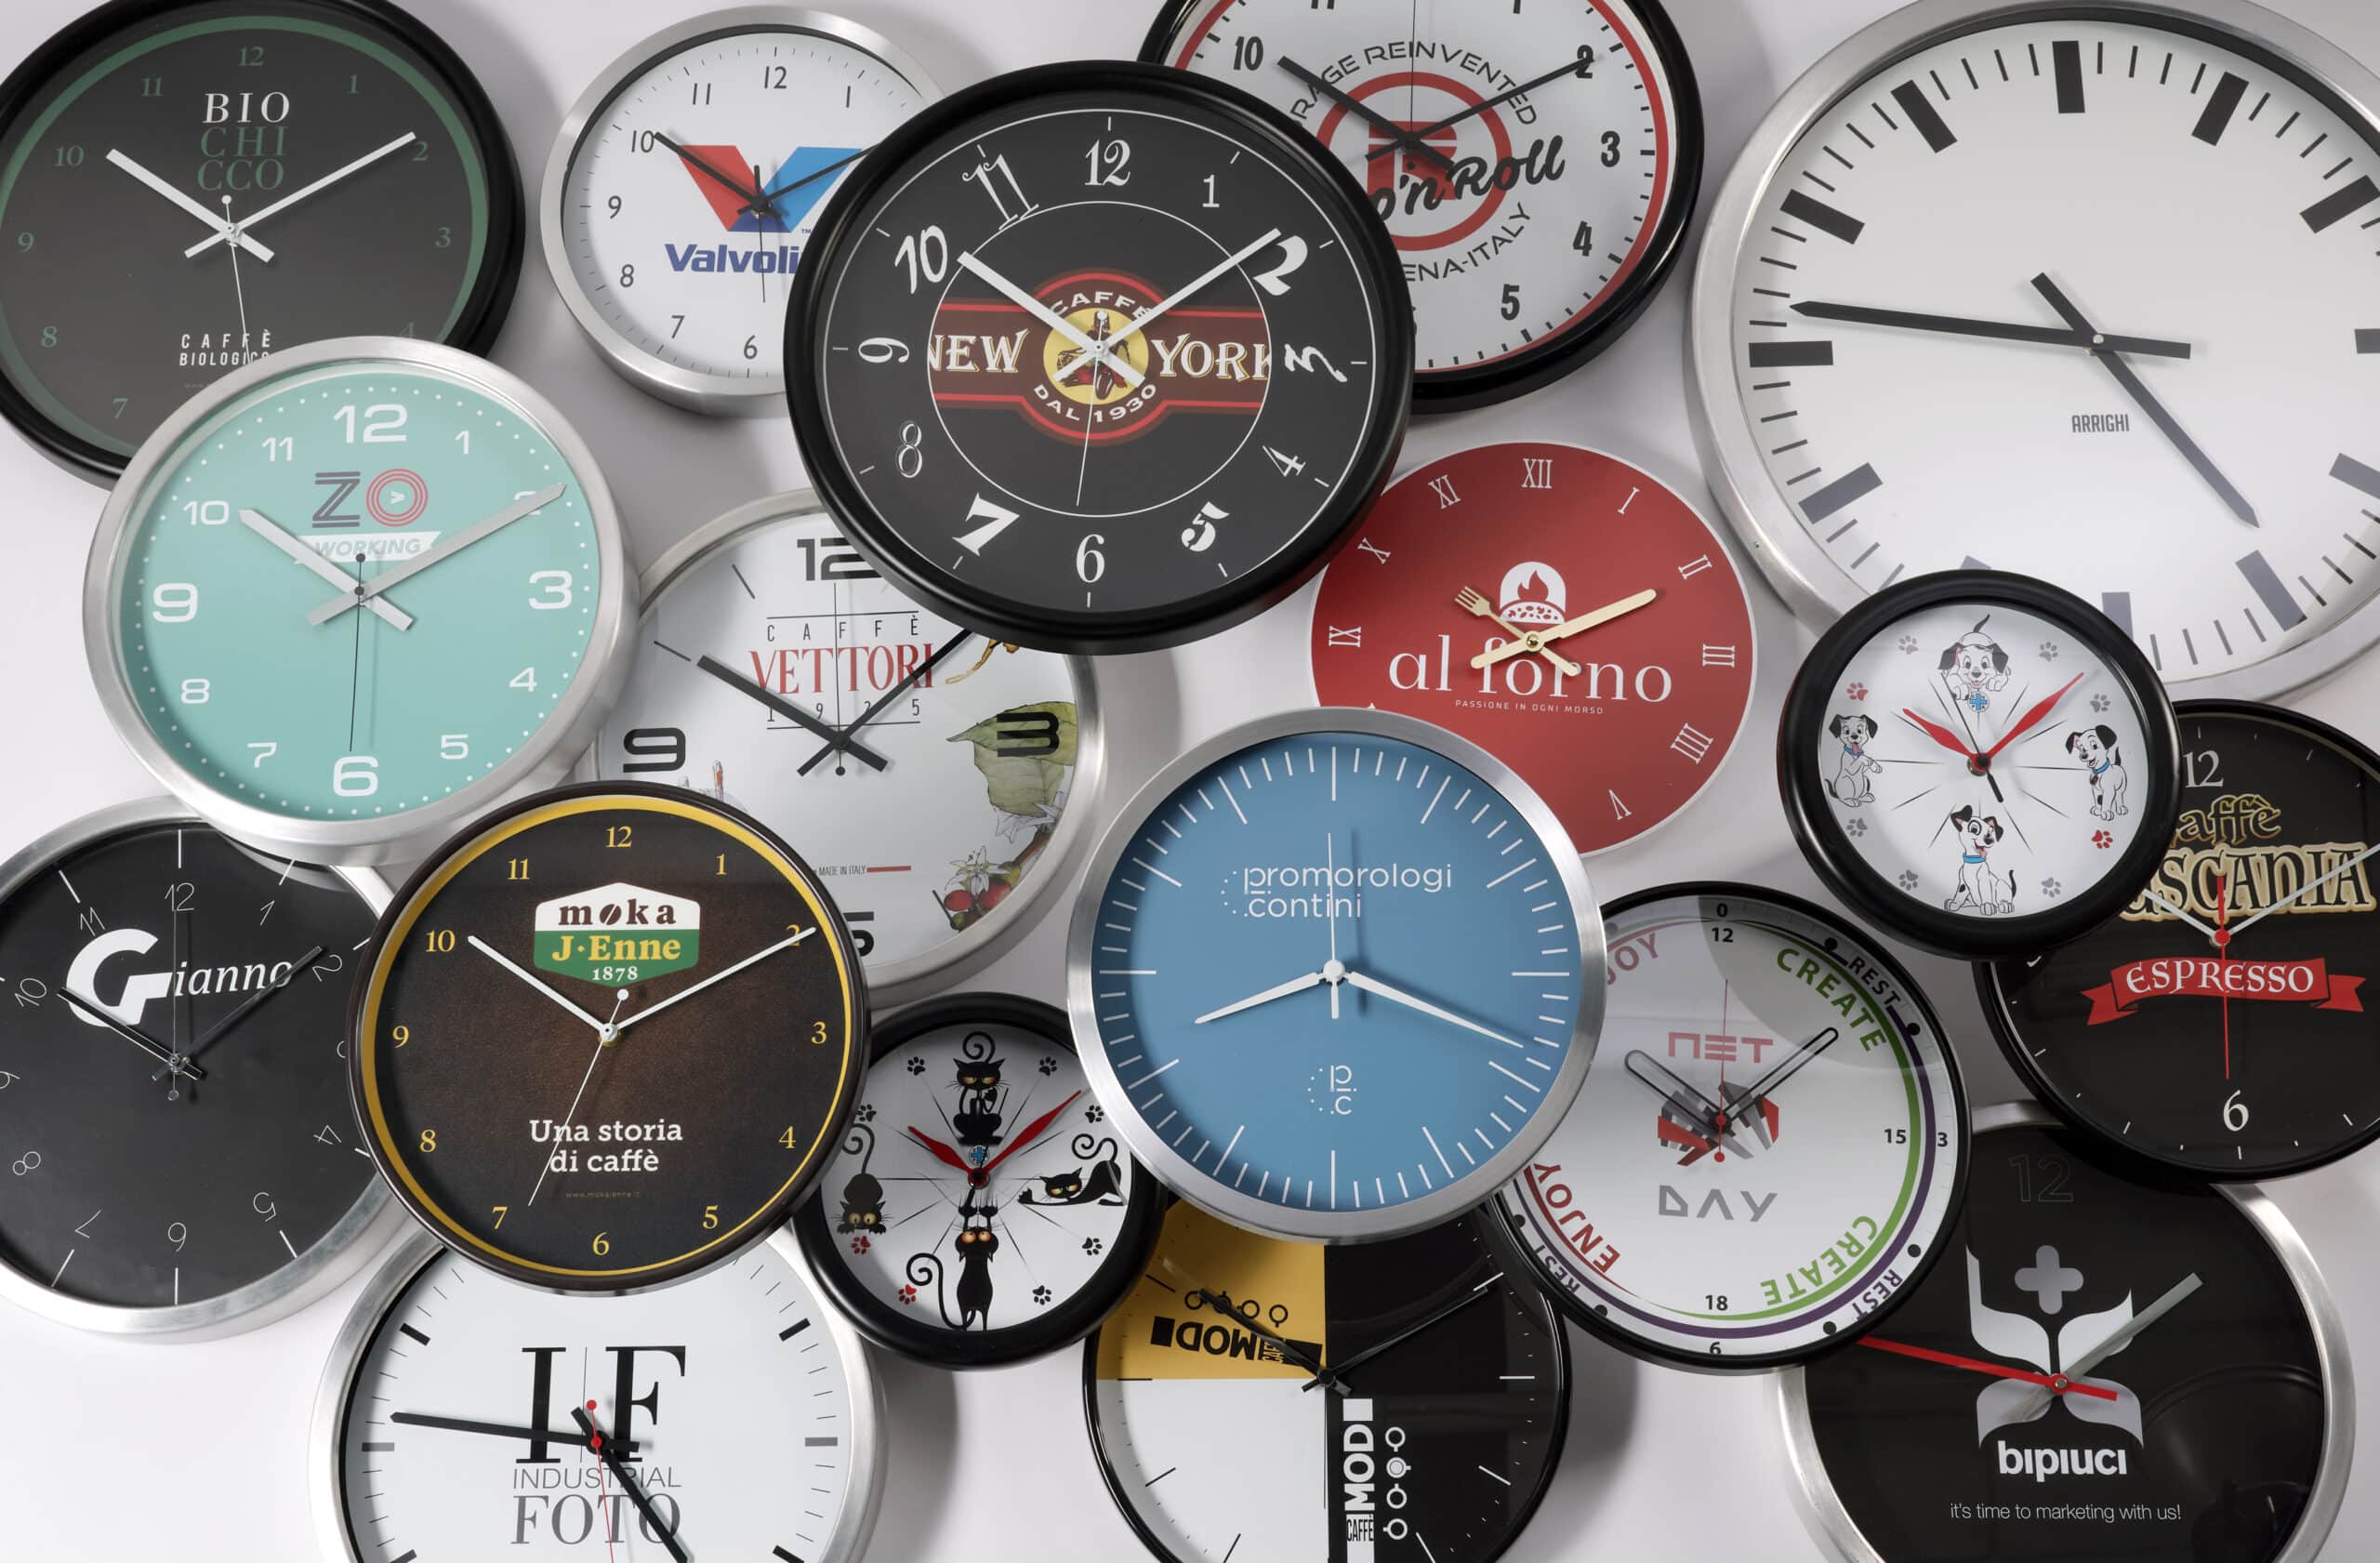 esempi di orologi promozionali da parete personalizzati nella grafica per gadget aziendali by Promo Orologi Firenze